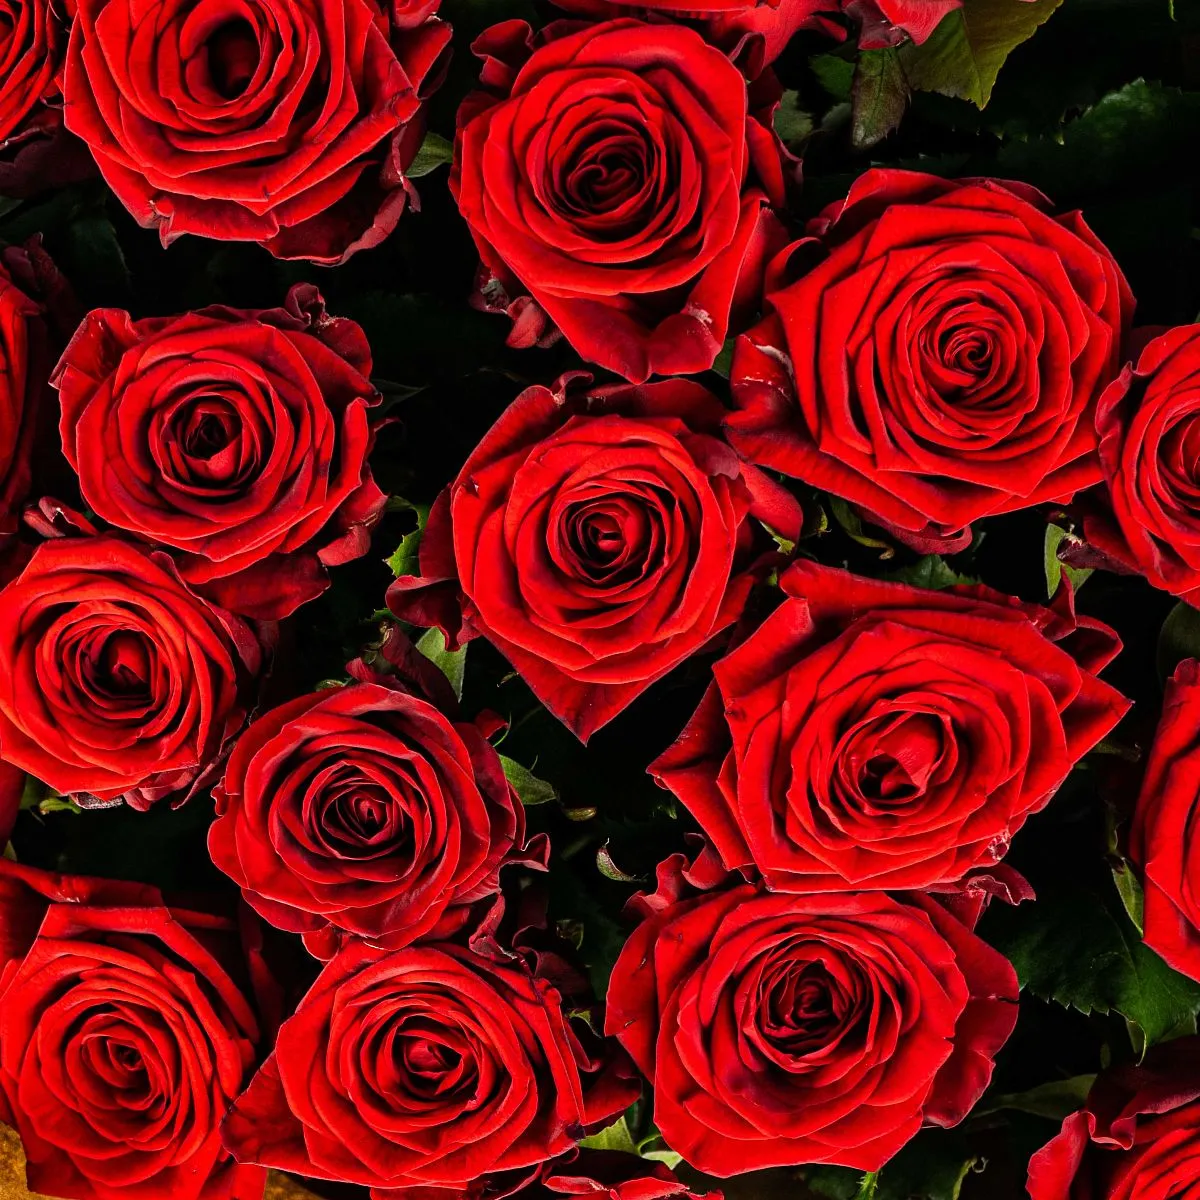 21 красная роза (70 см)